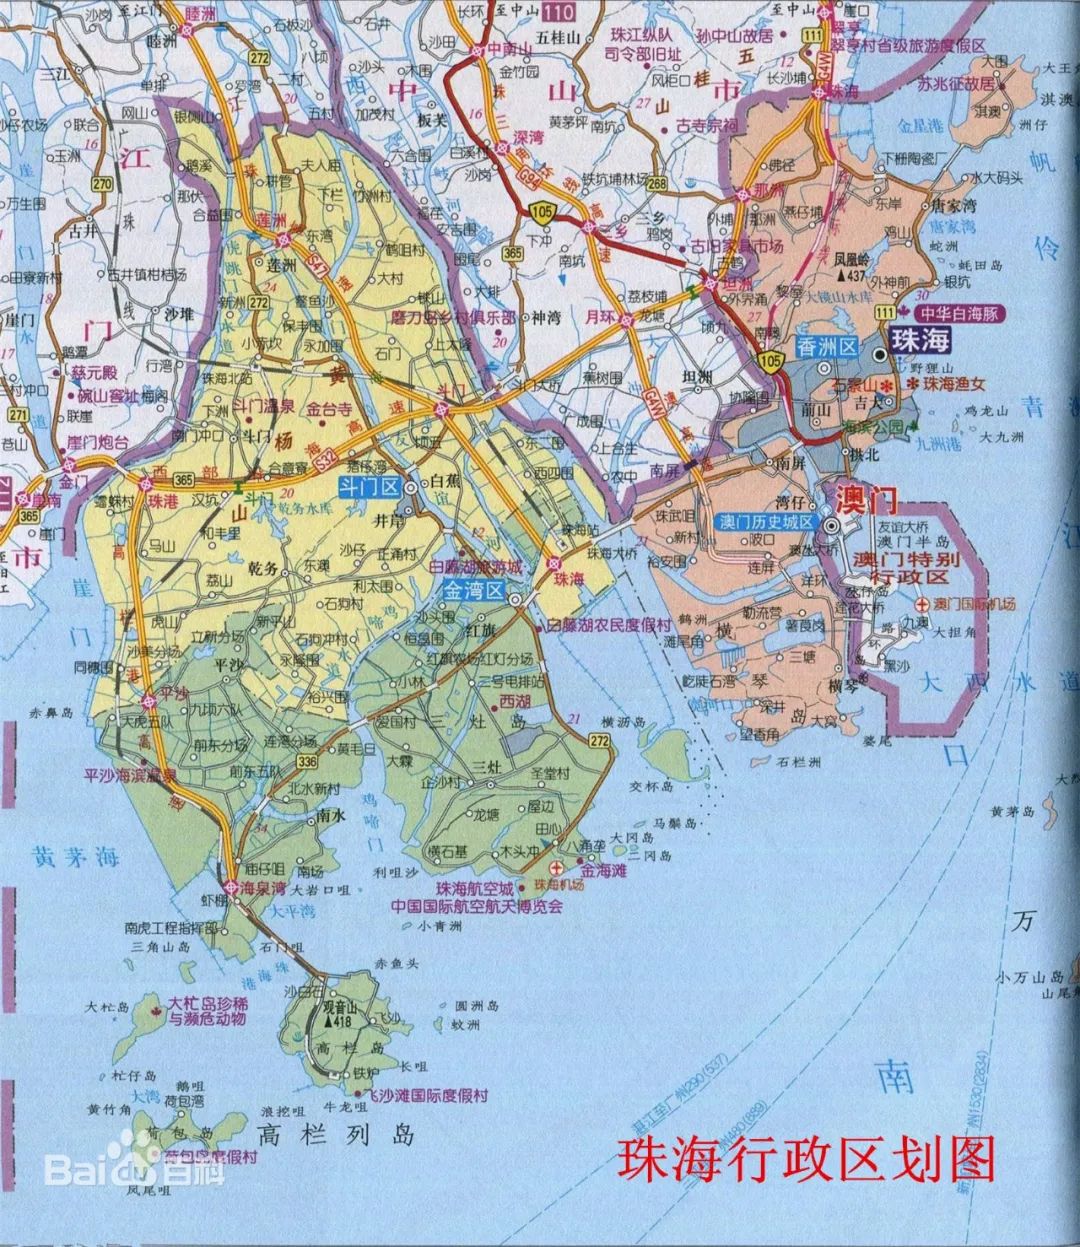 珠海旅游地图高清版大图片_珠海旅游地图景点分布高清_珠海旅游地图全图